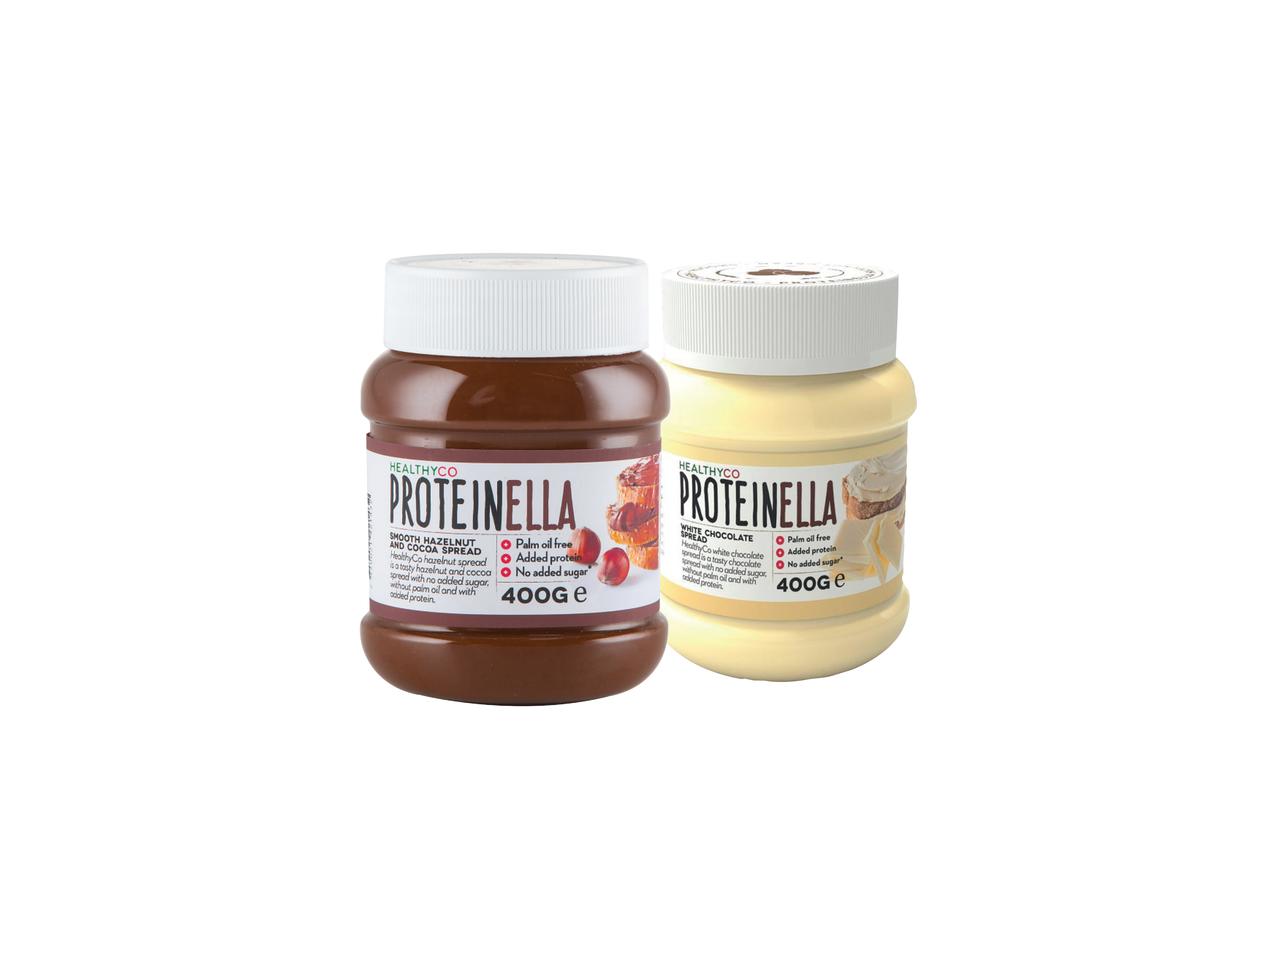 HEALTHY CO Proteinella Hazelnut & Cocoa/ White Chocolate Spread